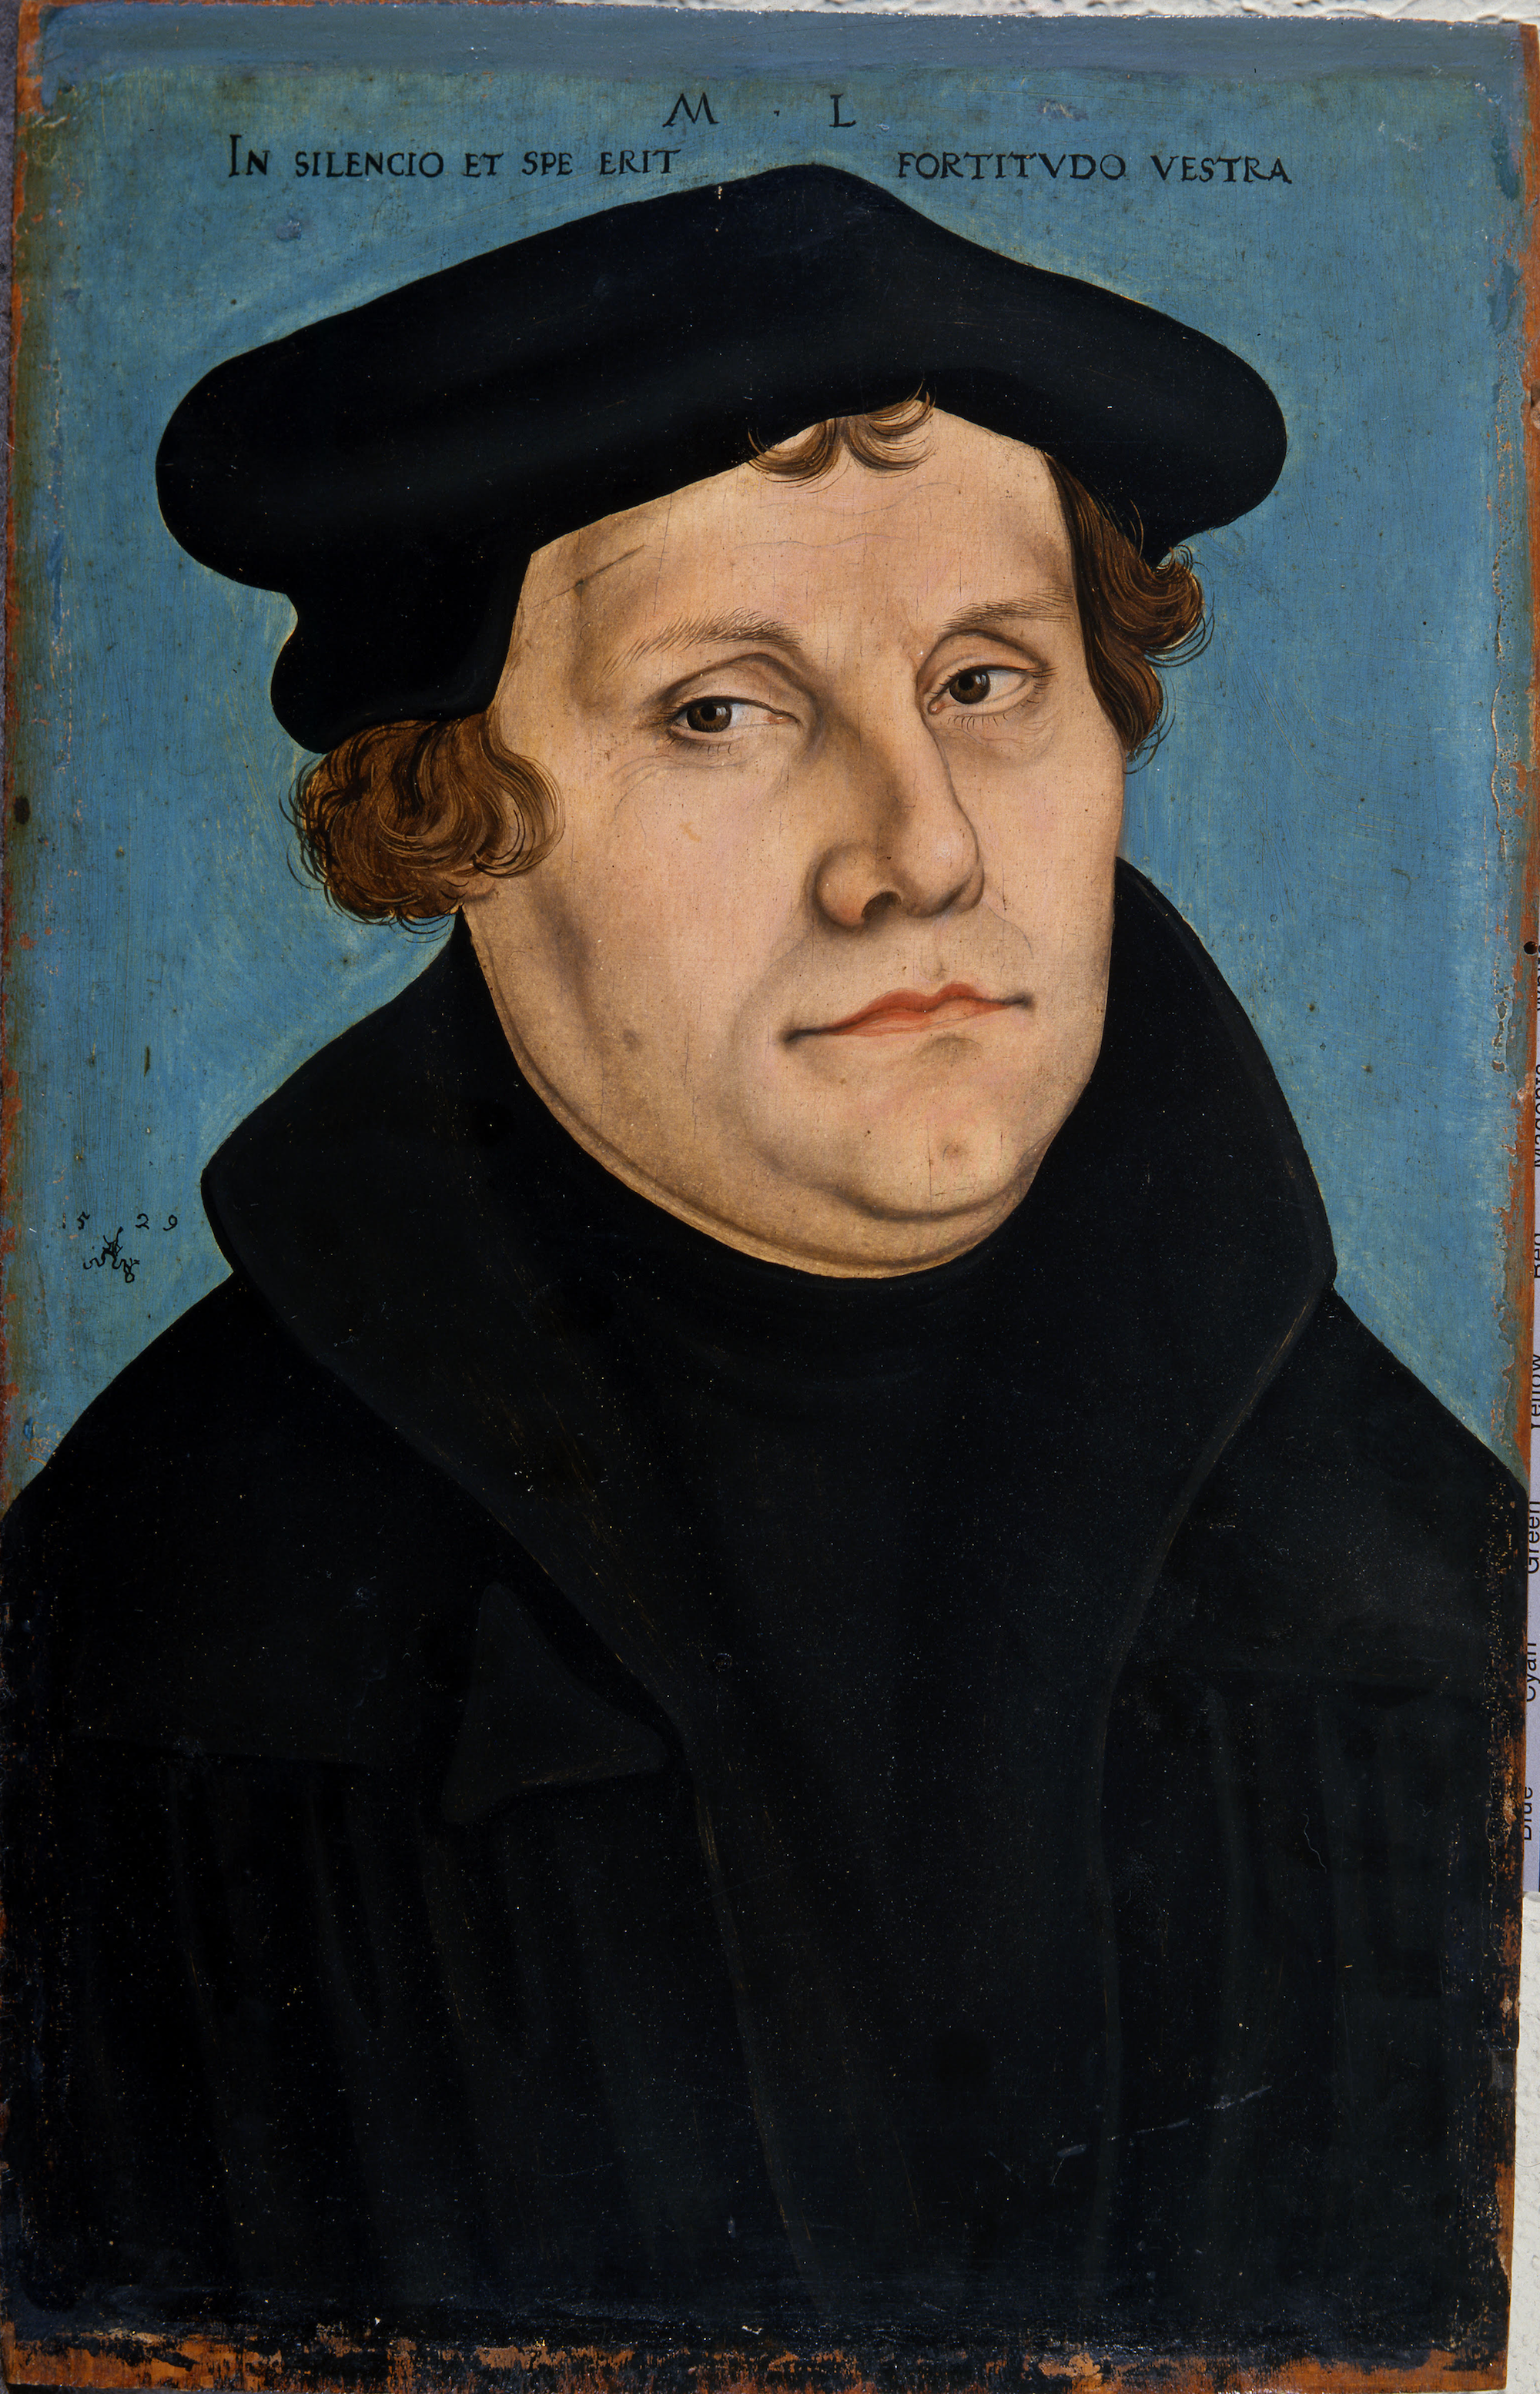 Martin Lutero by Lucas Cranach il Vecchio - 1529 - 38,3 X 24 cm 